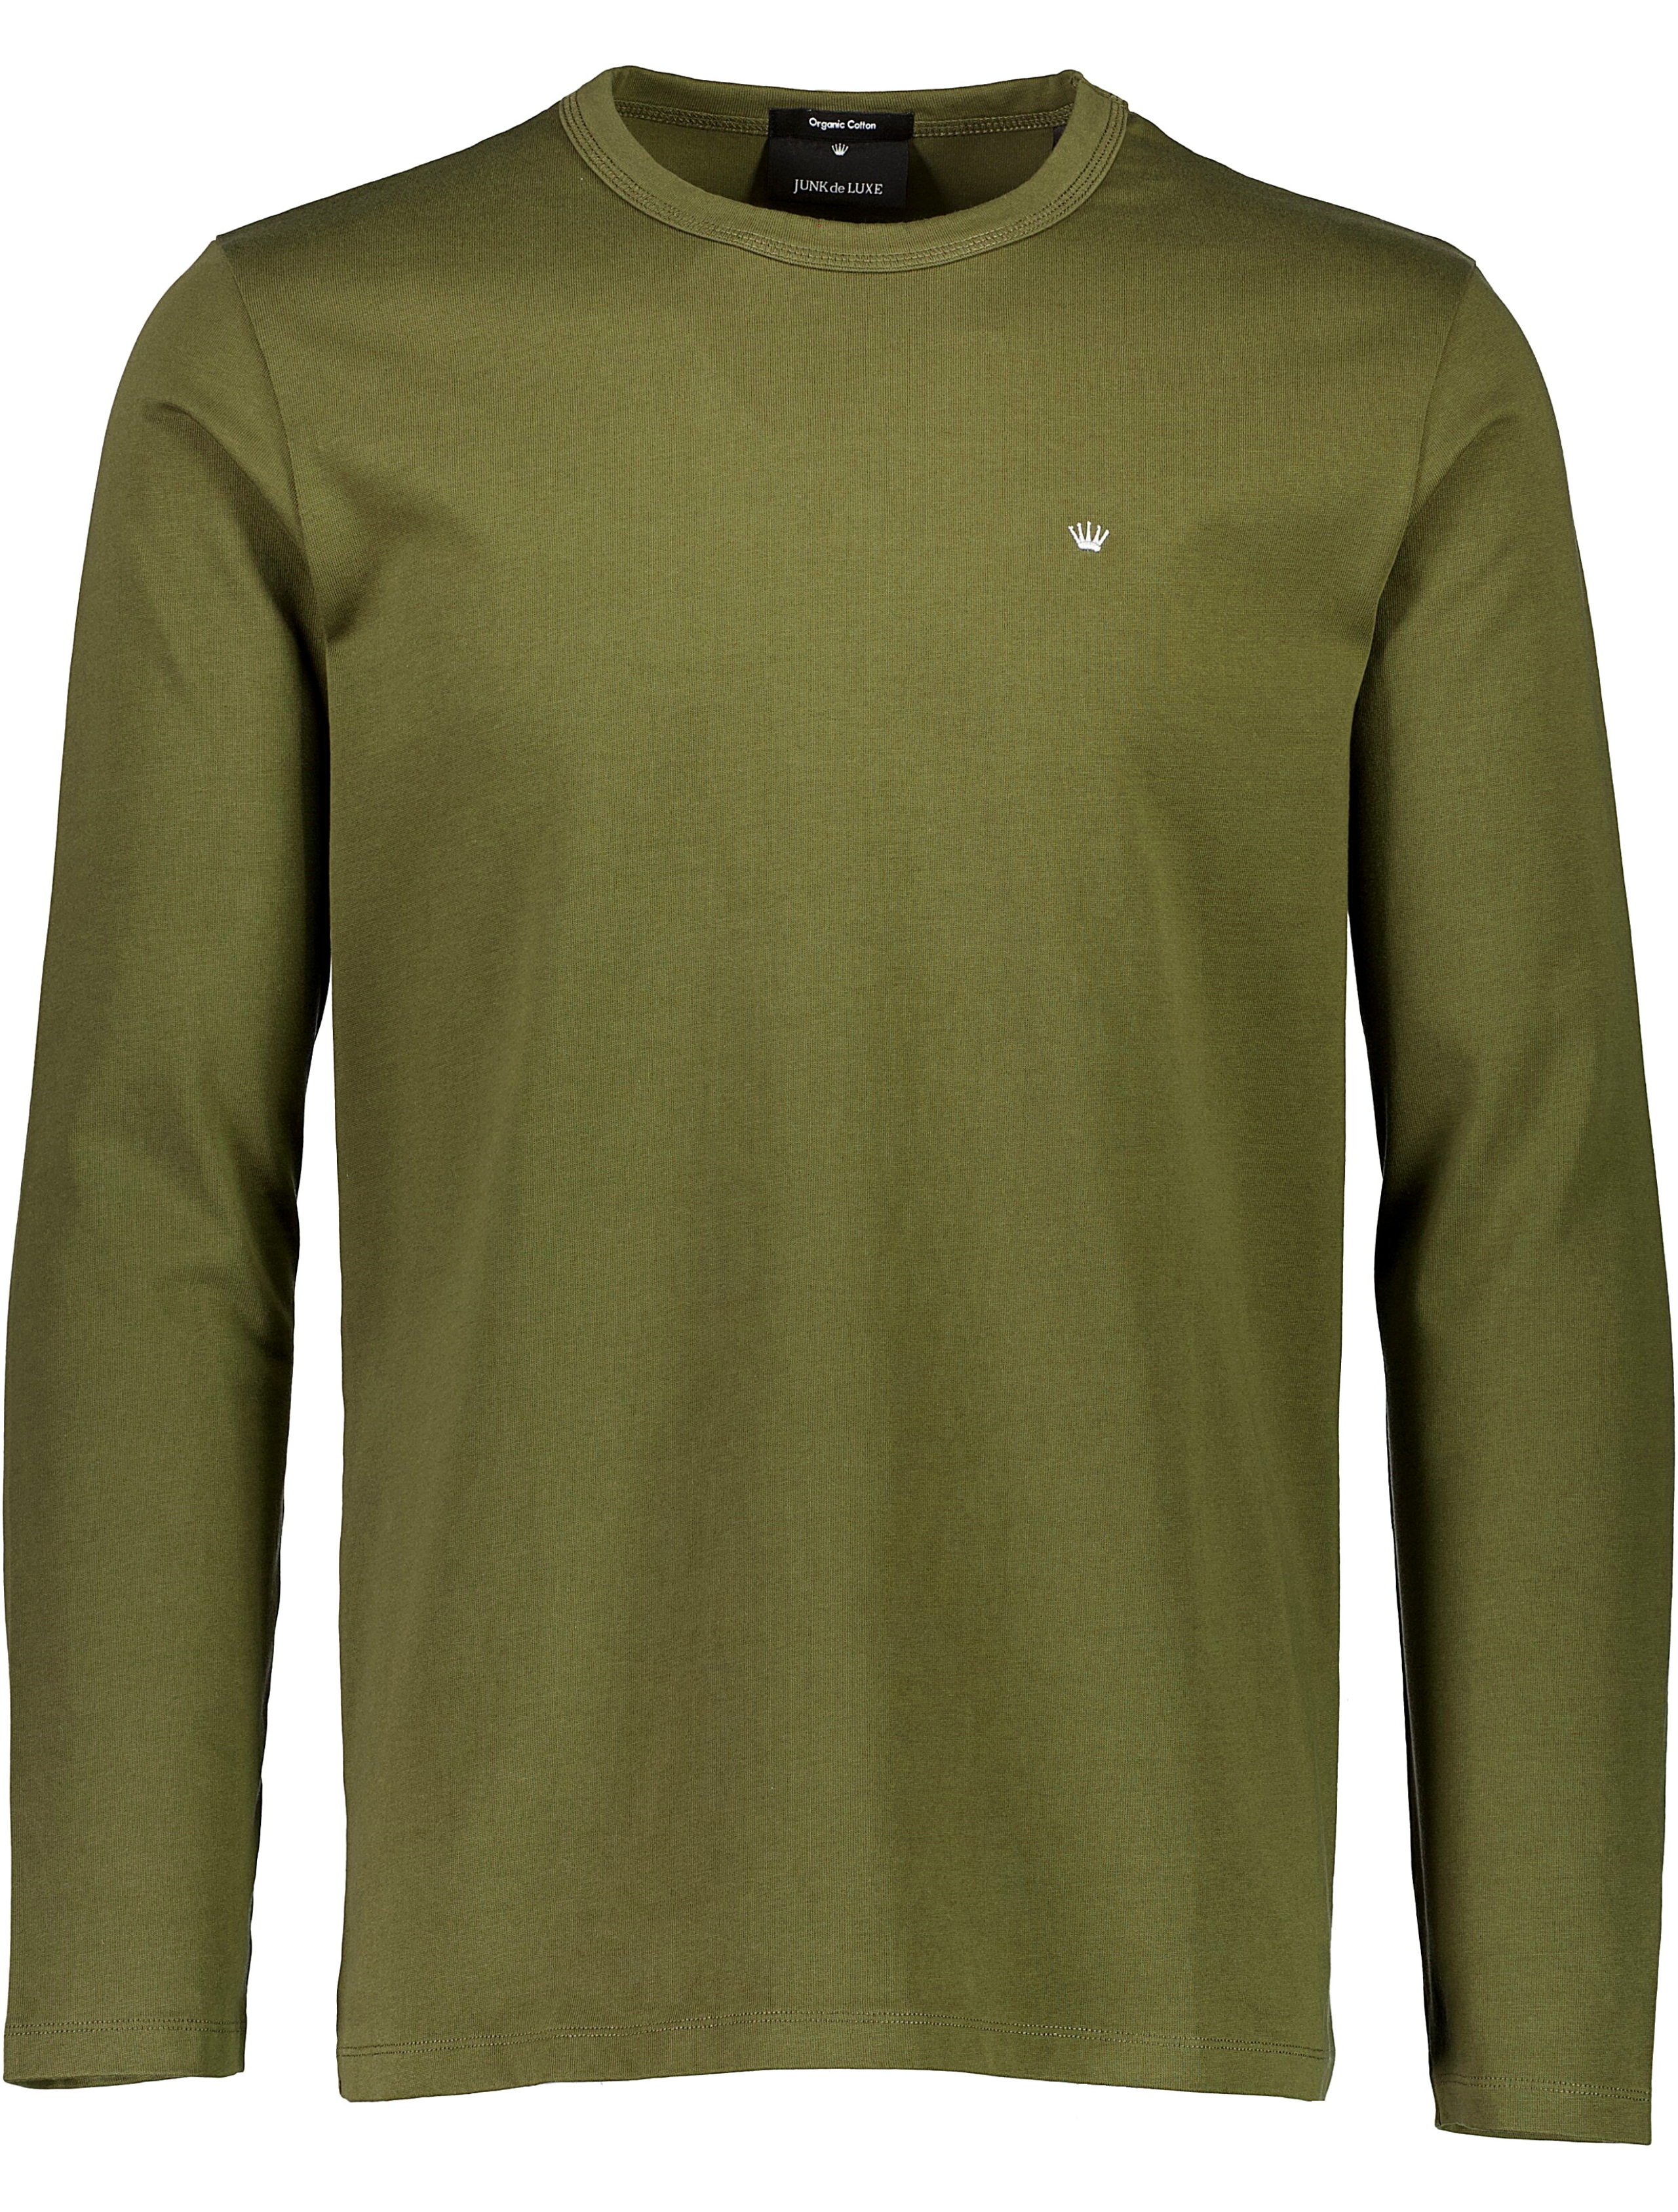 Junk de Luxe T-shirt grön / army